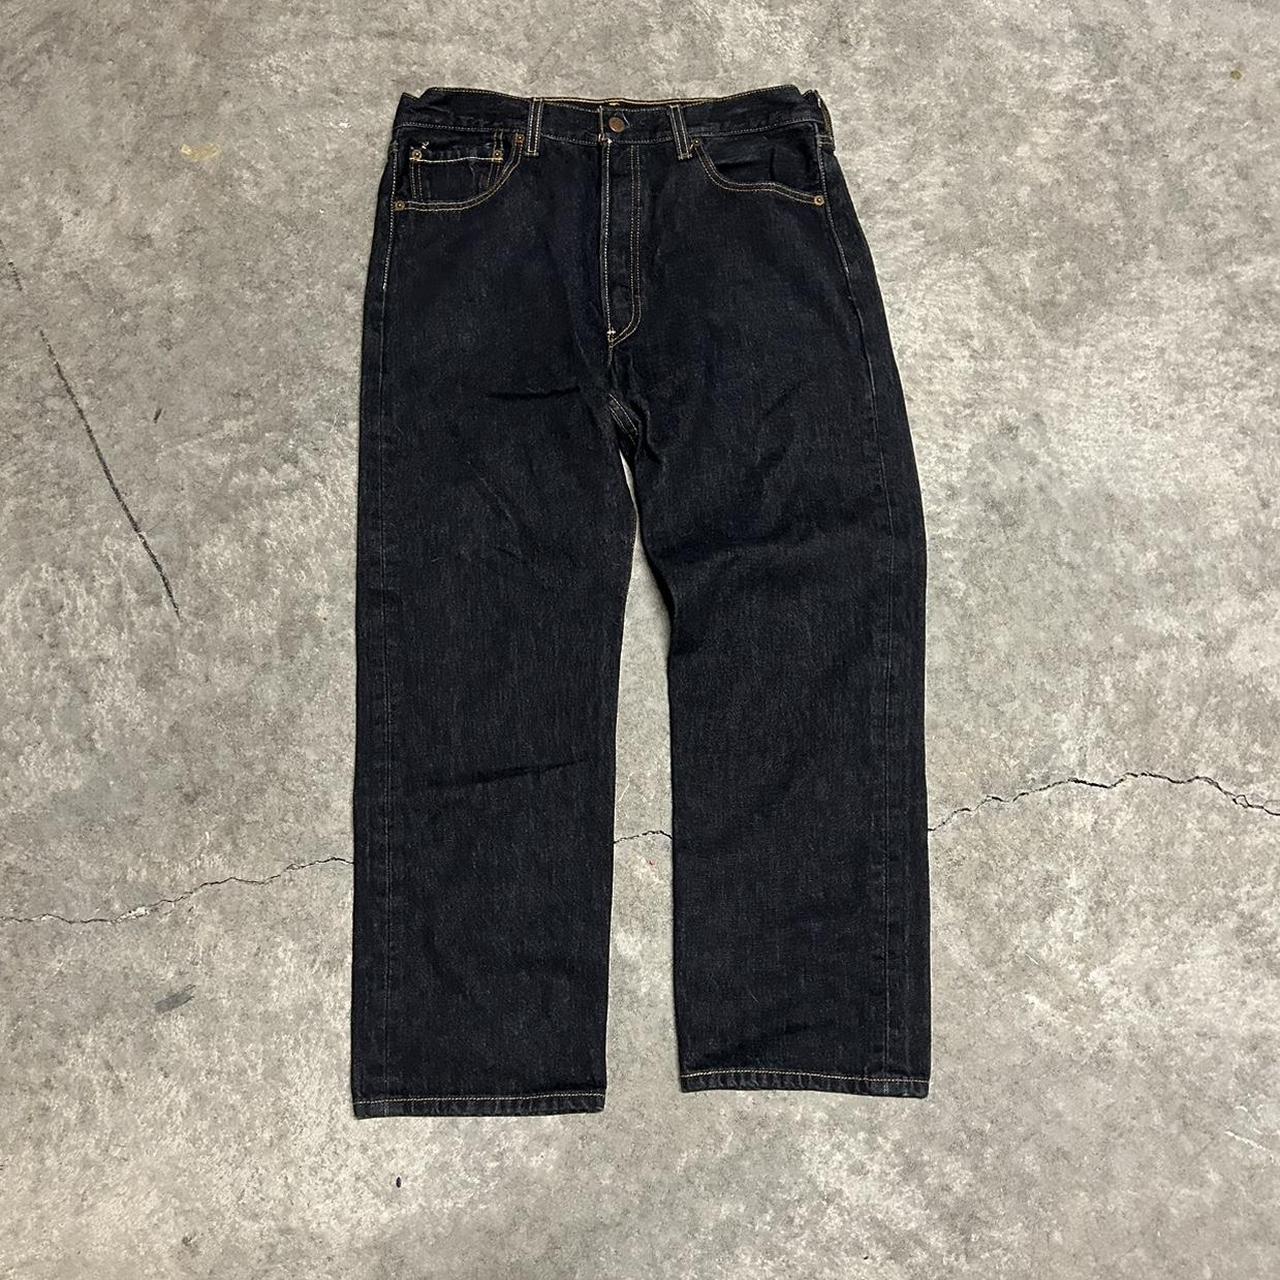 Levis 501 jeans black Baggy fit Great quality Size... - Depop